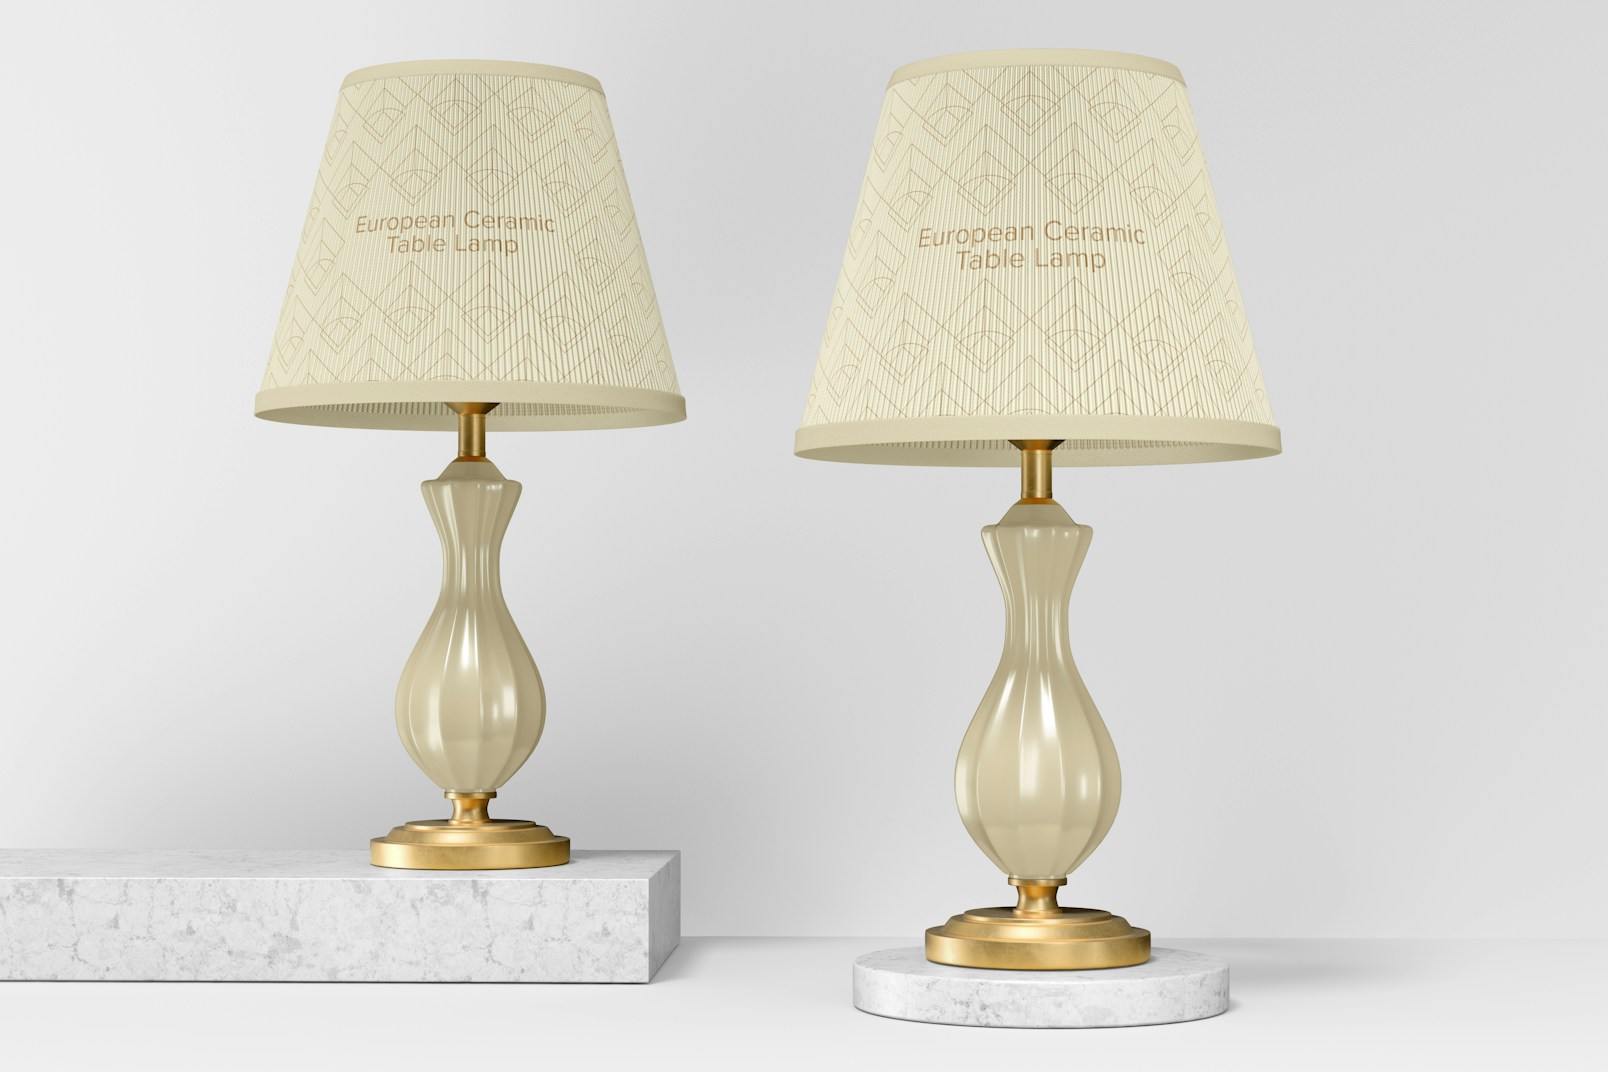 European Ceramic Table Lamps Mockup